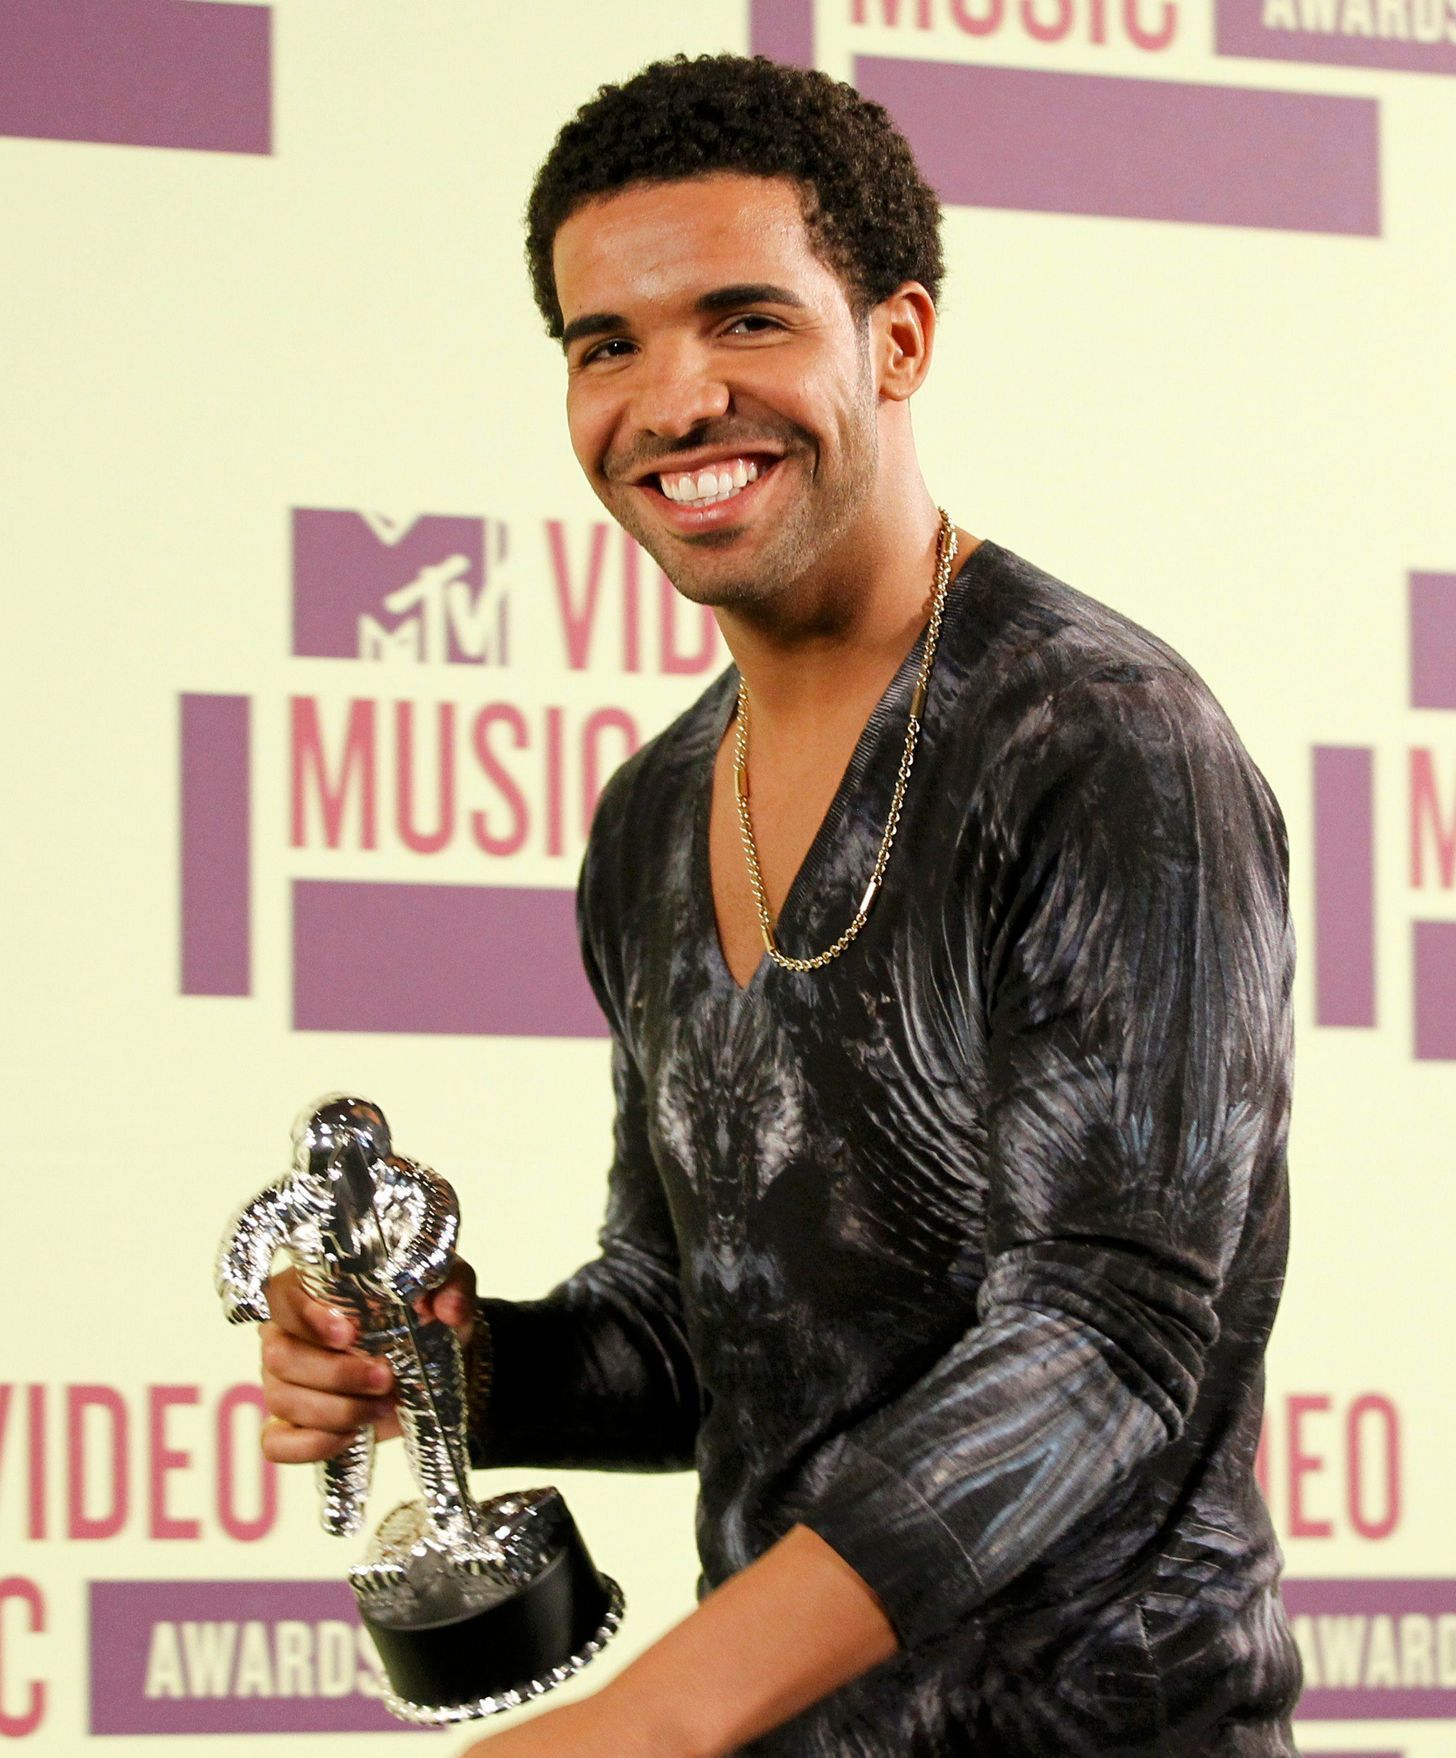 MTV Video Music Awards - Rapper Drake